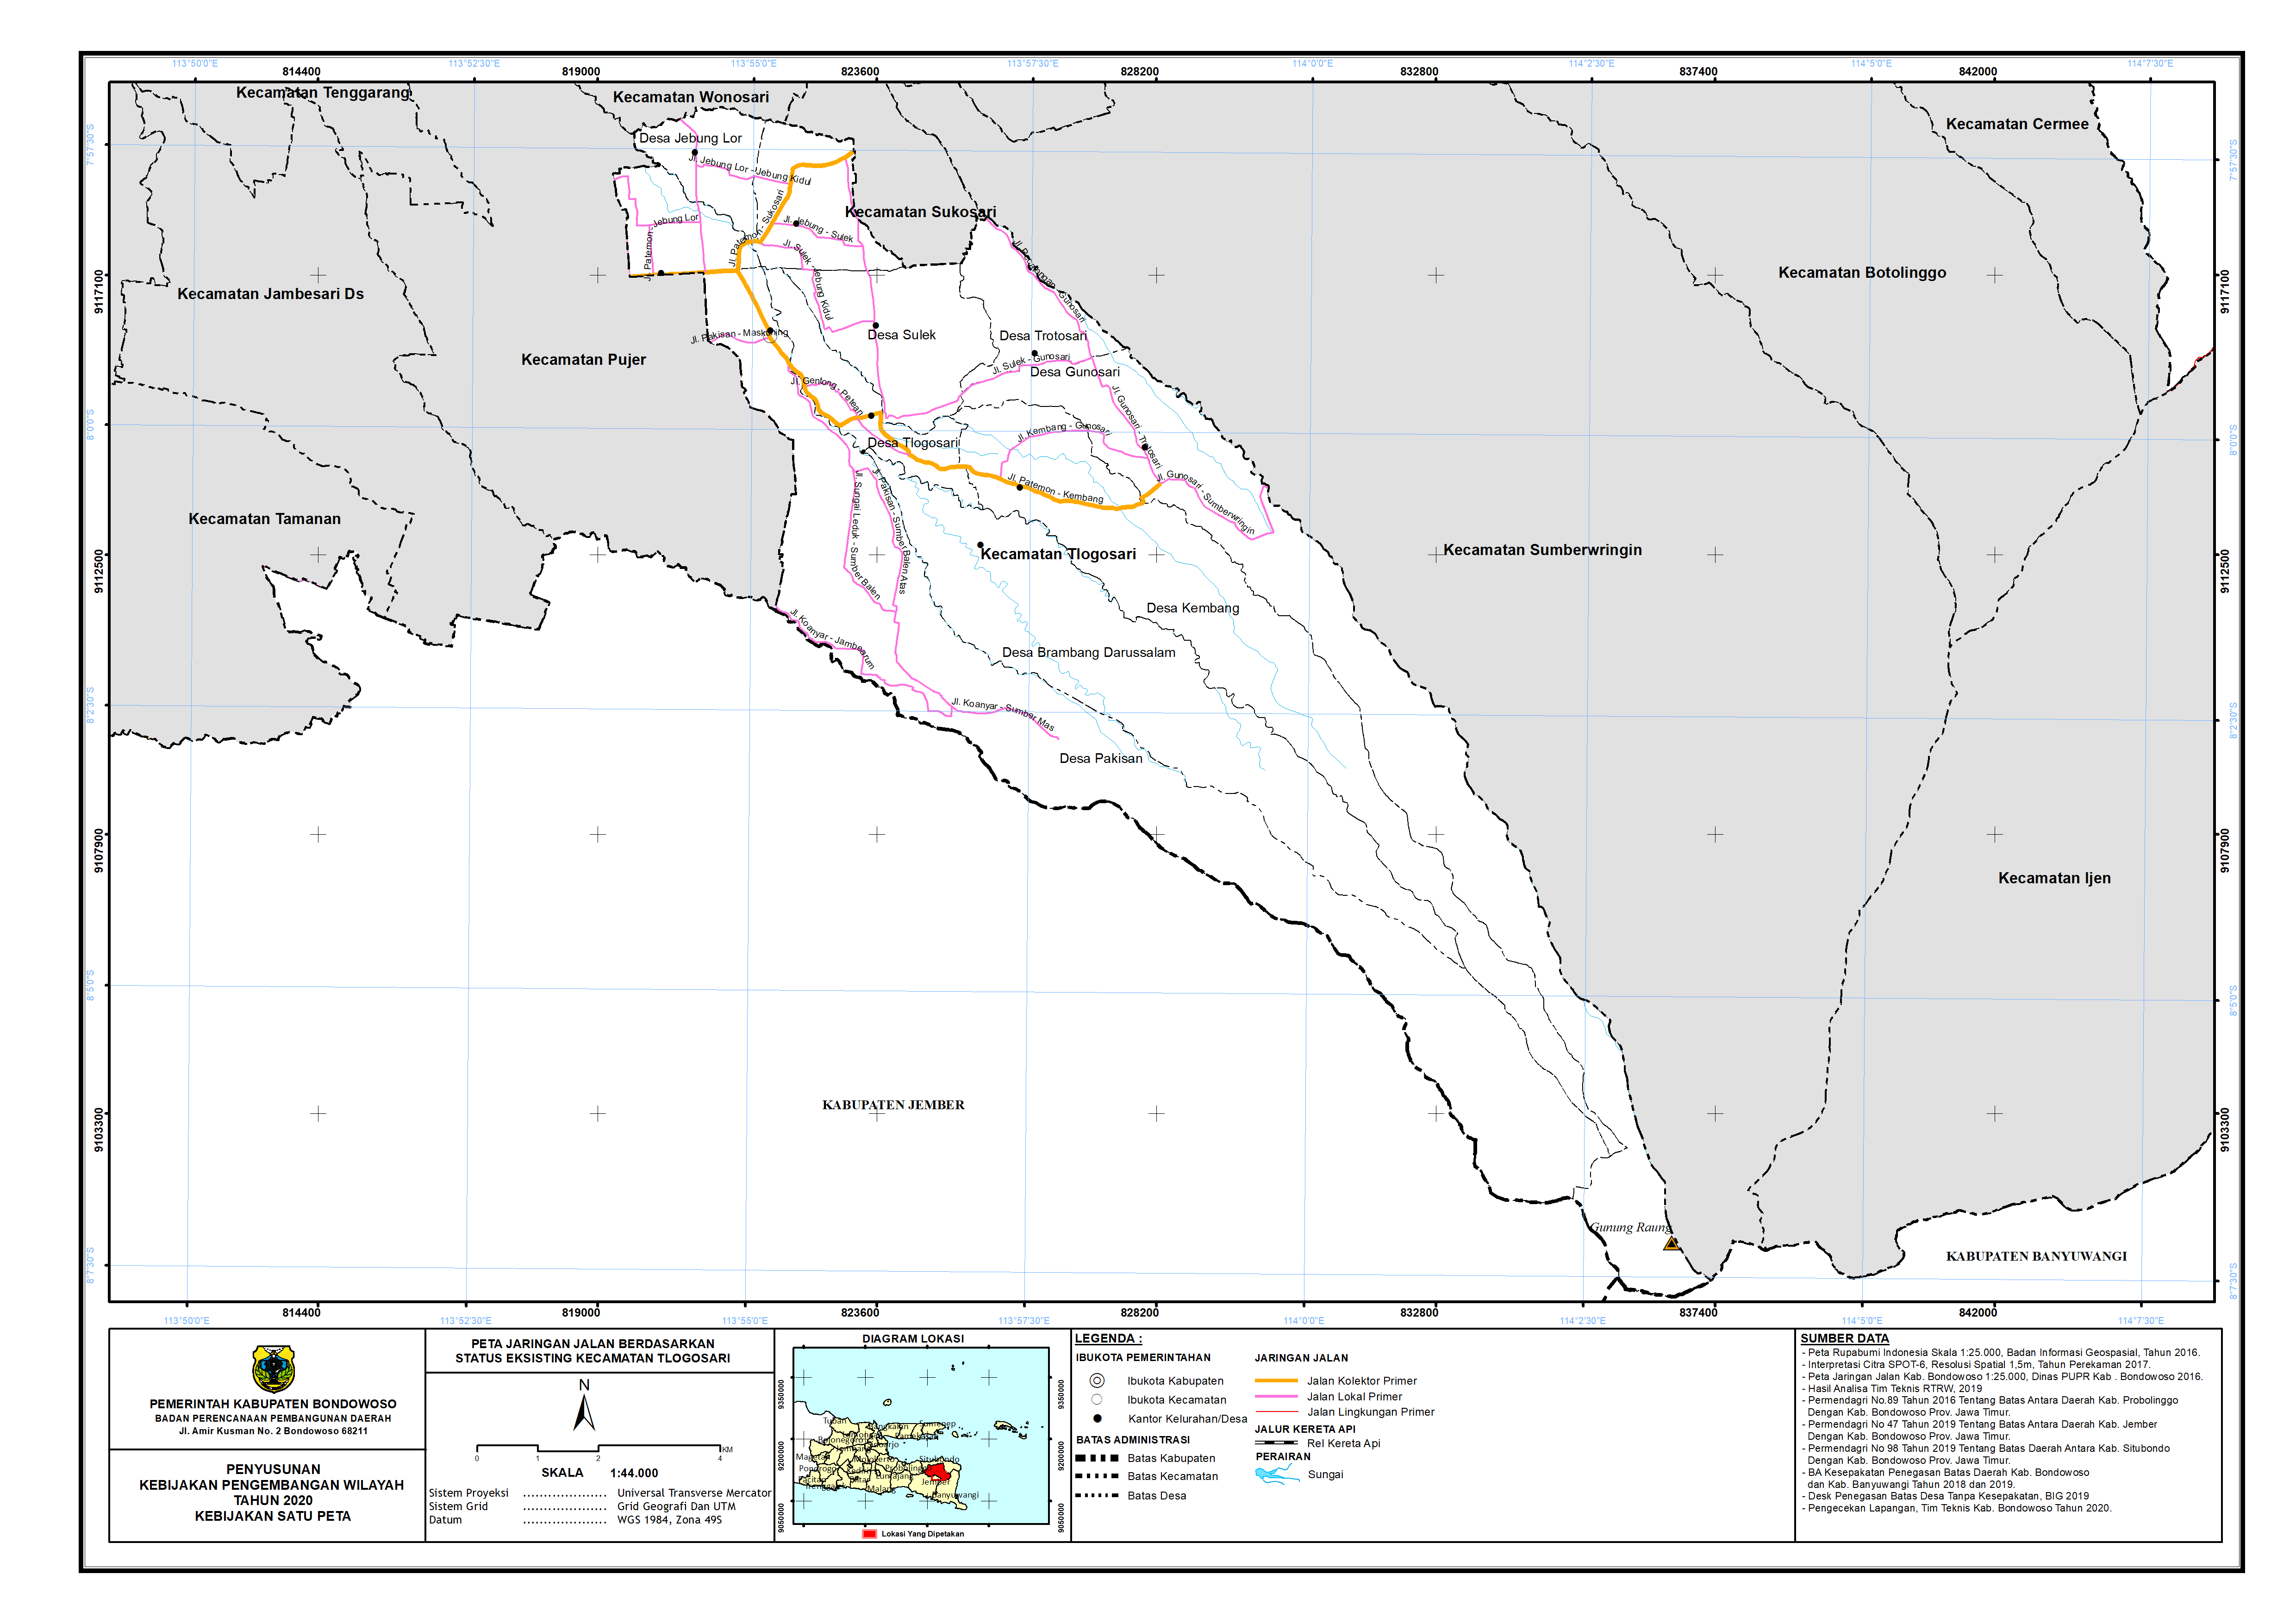 Peta Jaringan Jalan Berdasarkan Status Eksisting Kecamatan Tlogosari.png